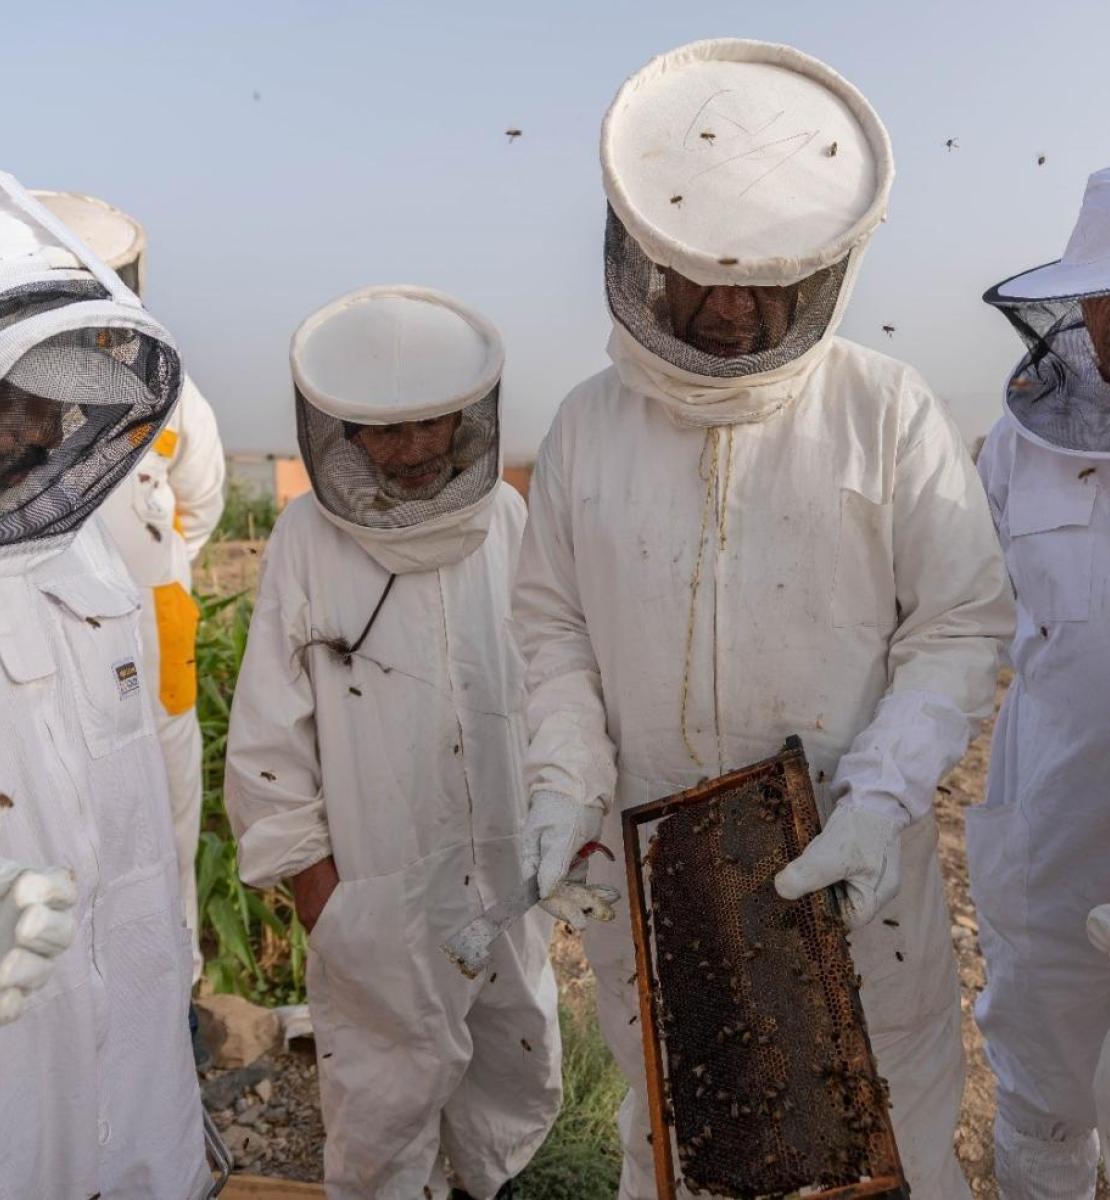 يرتدي مربو النحل ملابس واقية ويفحصون خلية النحل.